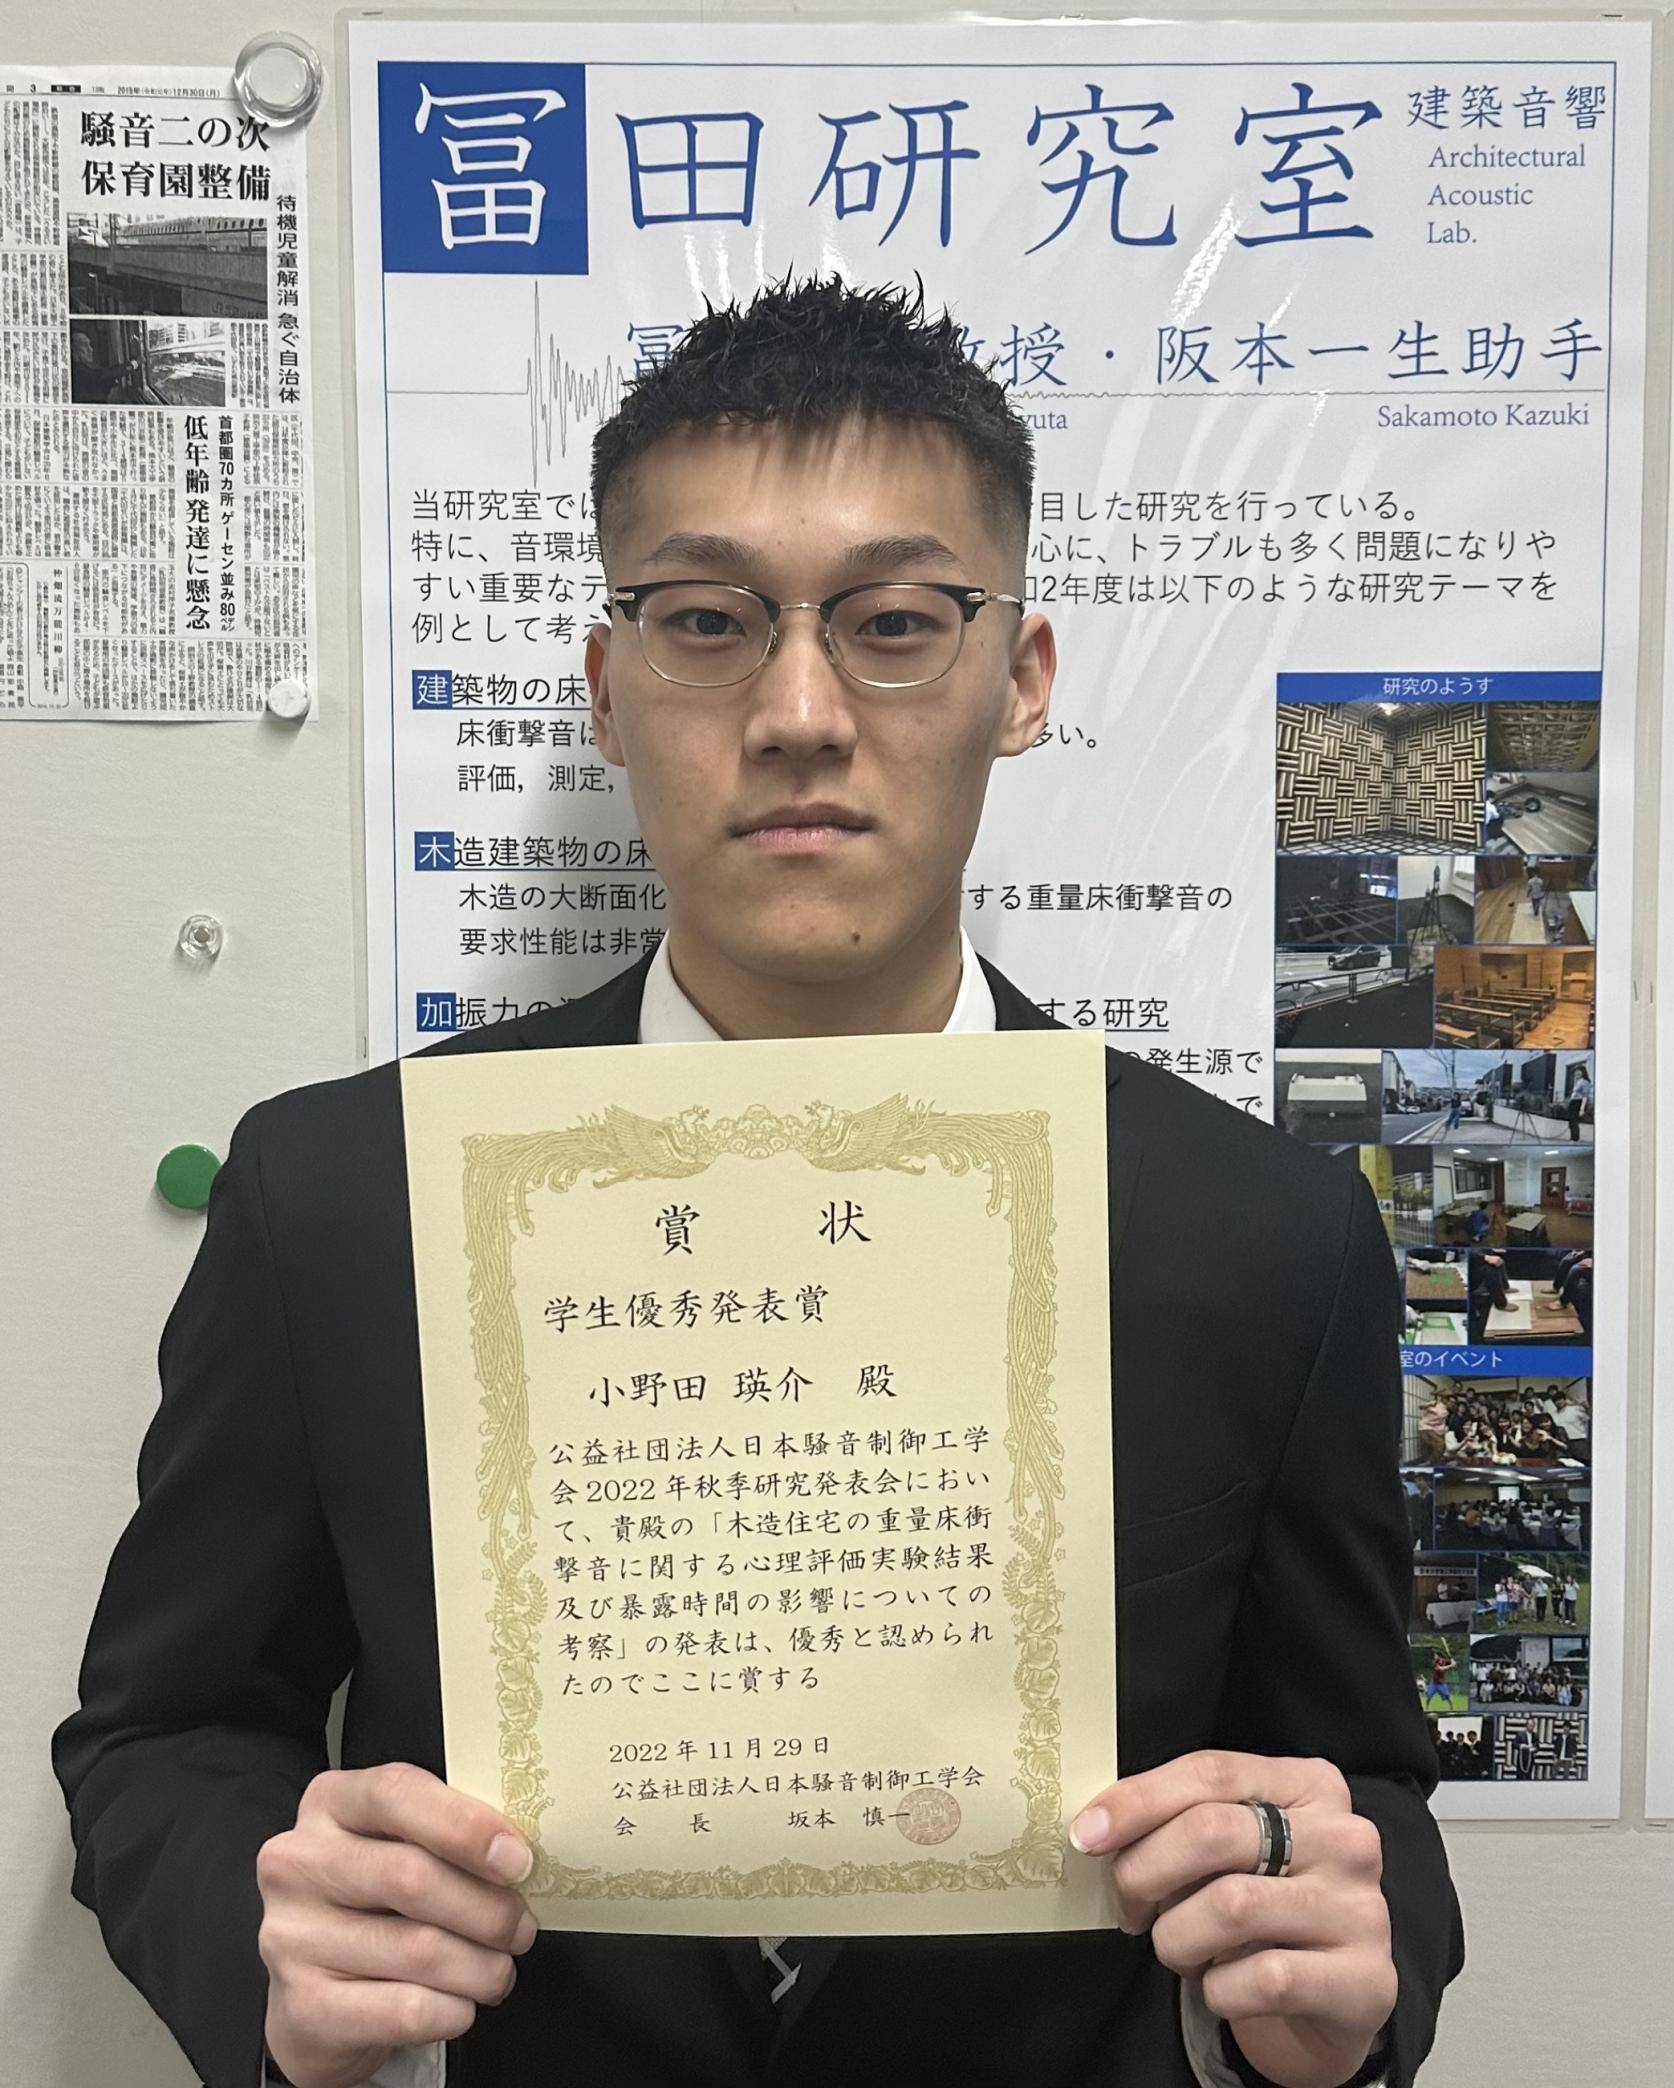 建築学専攻博士前期課程１年小野田瑛介さんが、日本騒音制御工学会2022年秋季研究発表会において、学生優秀発表賞を受賞しました。